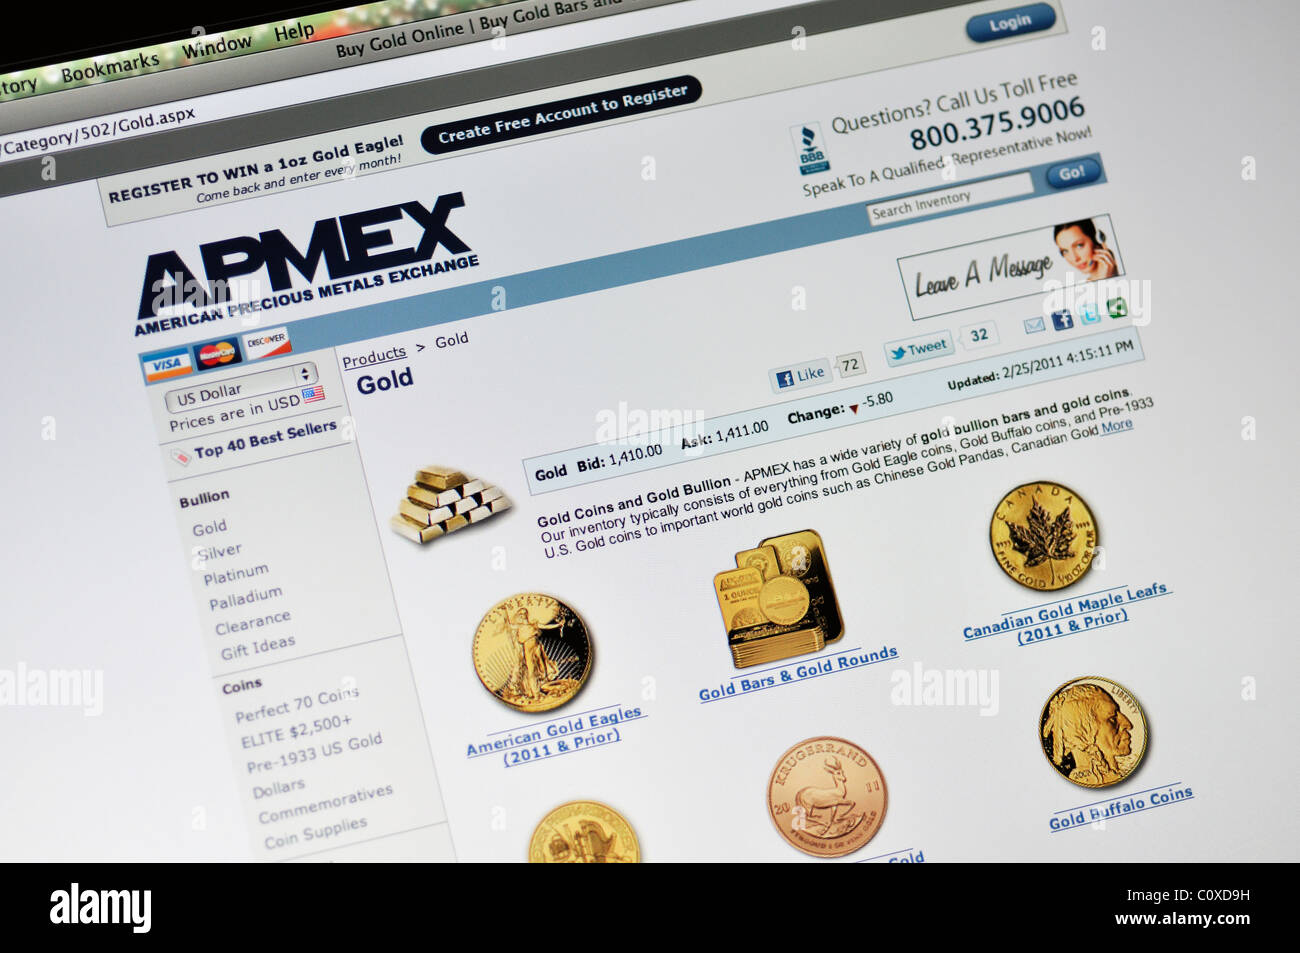 APMEX Webseite - American Precious Metals Exchange Stockfoto